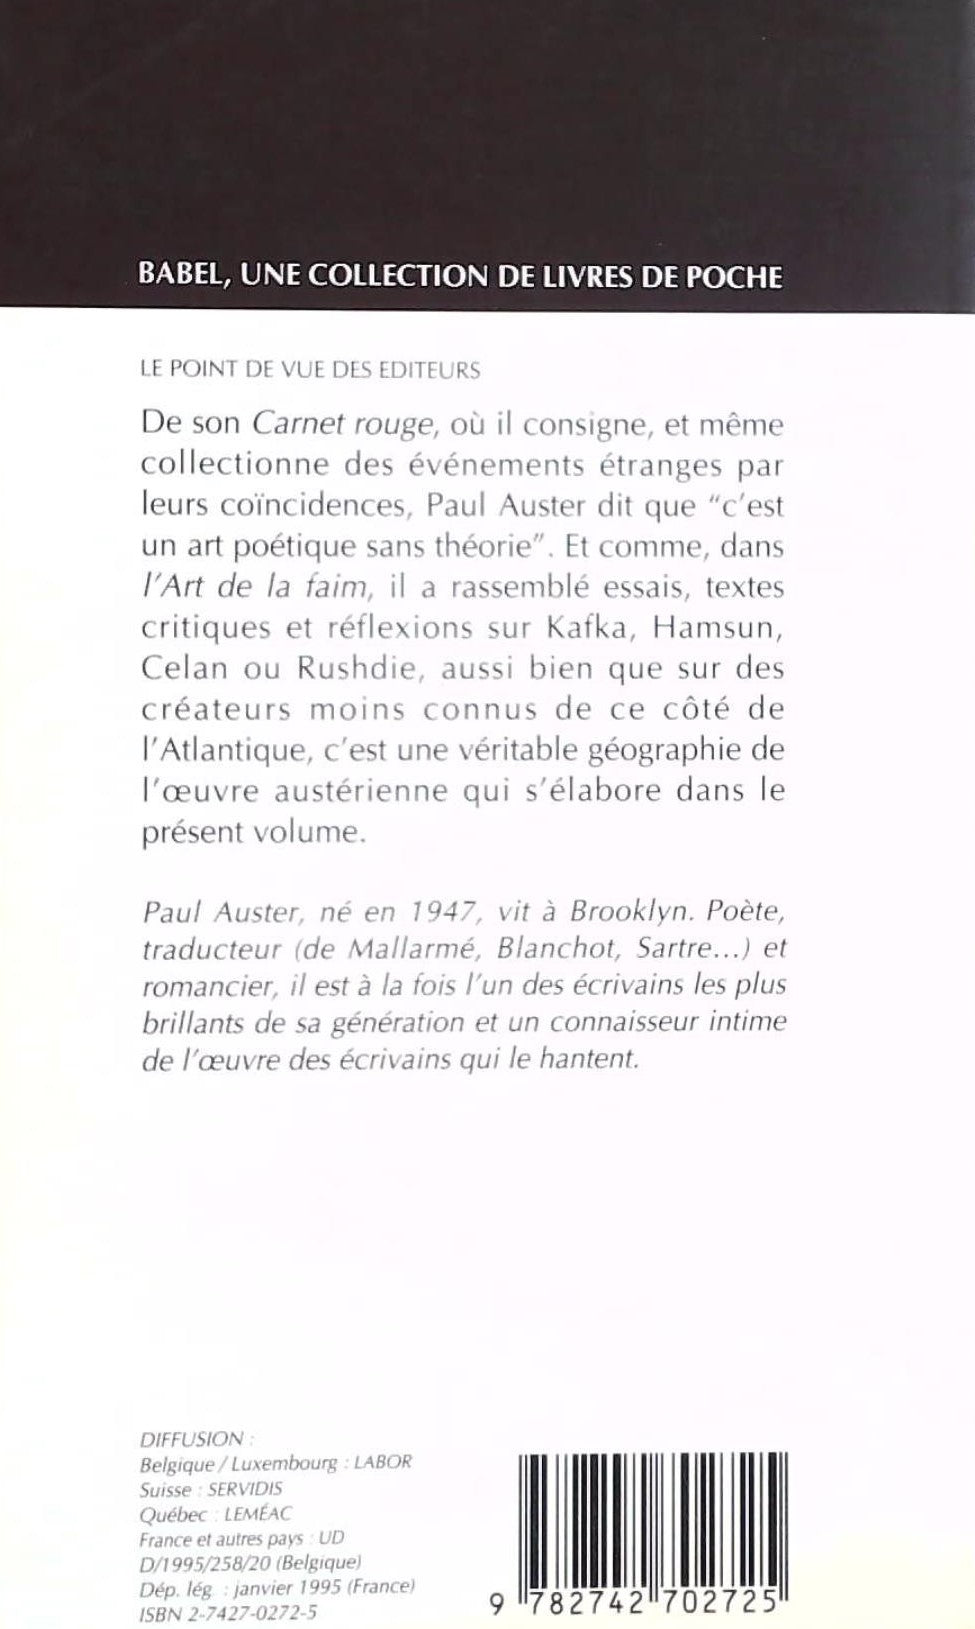 Le carnet rouge l'art de la faim (Paul Auster)